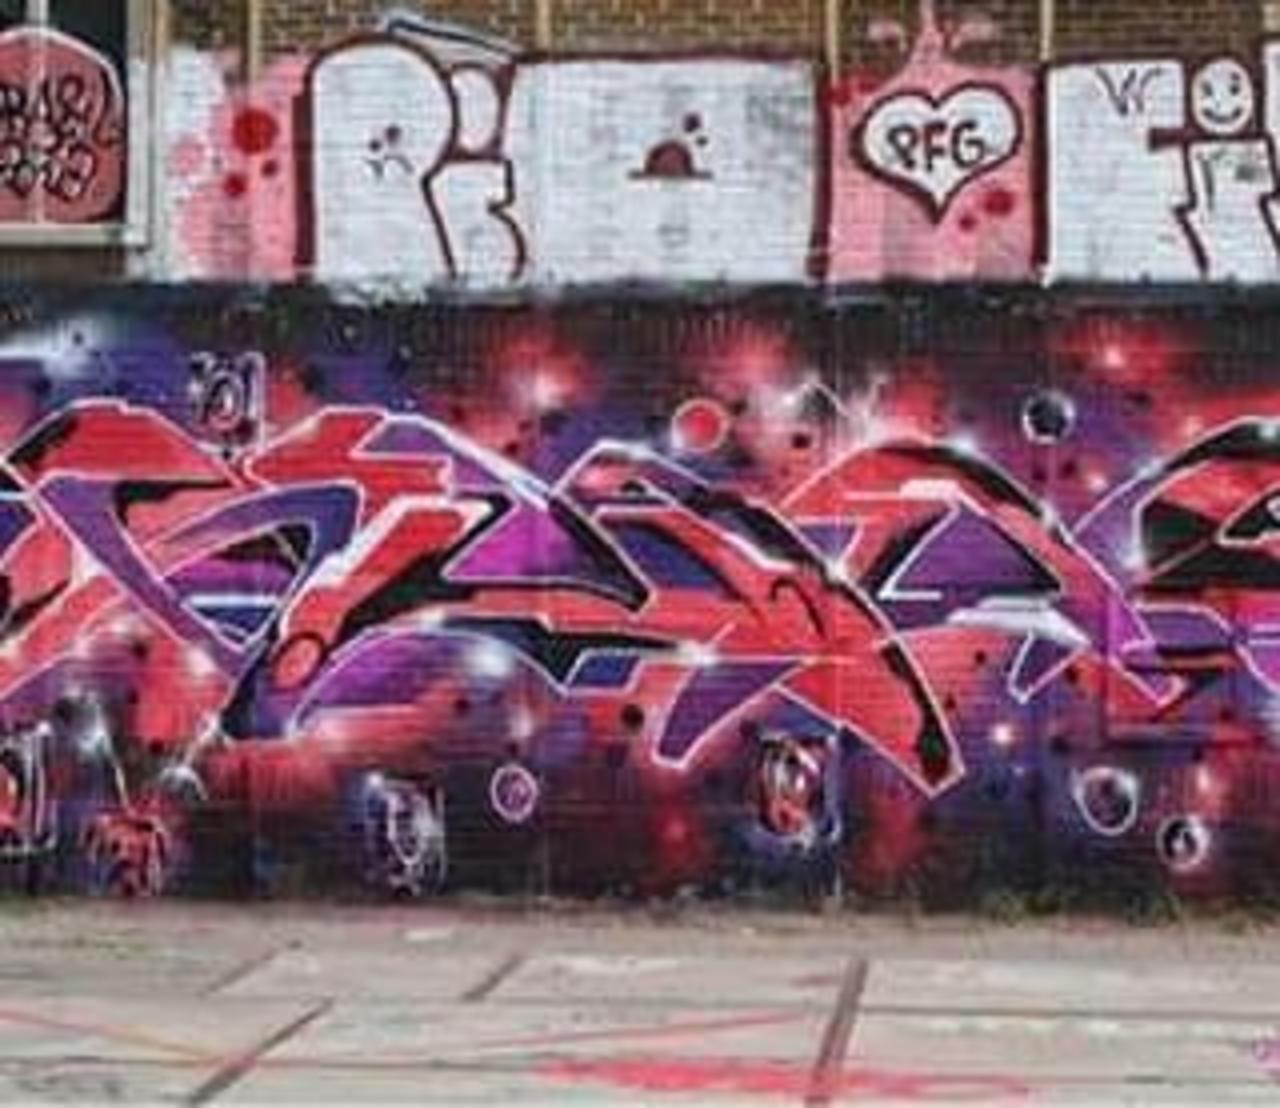 Straat Art NL wall of graffiti #straatartnl  #streetart #graffiti http://ift.tt/1jlvCxY http://t.co/HZiwBGPEqI